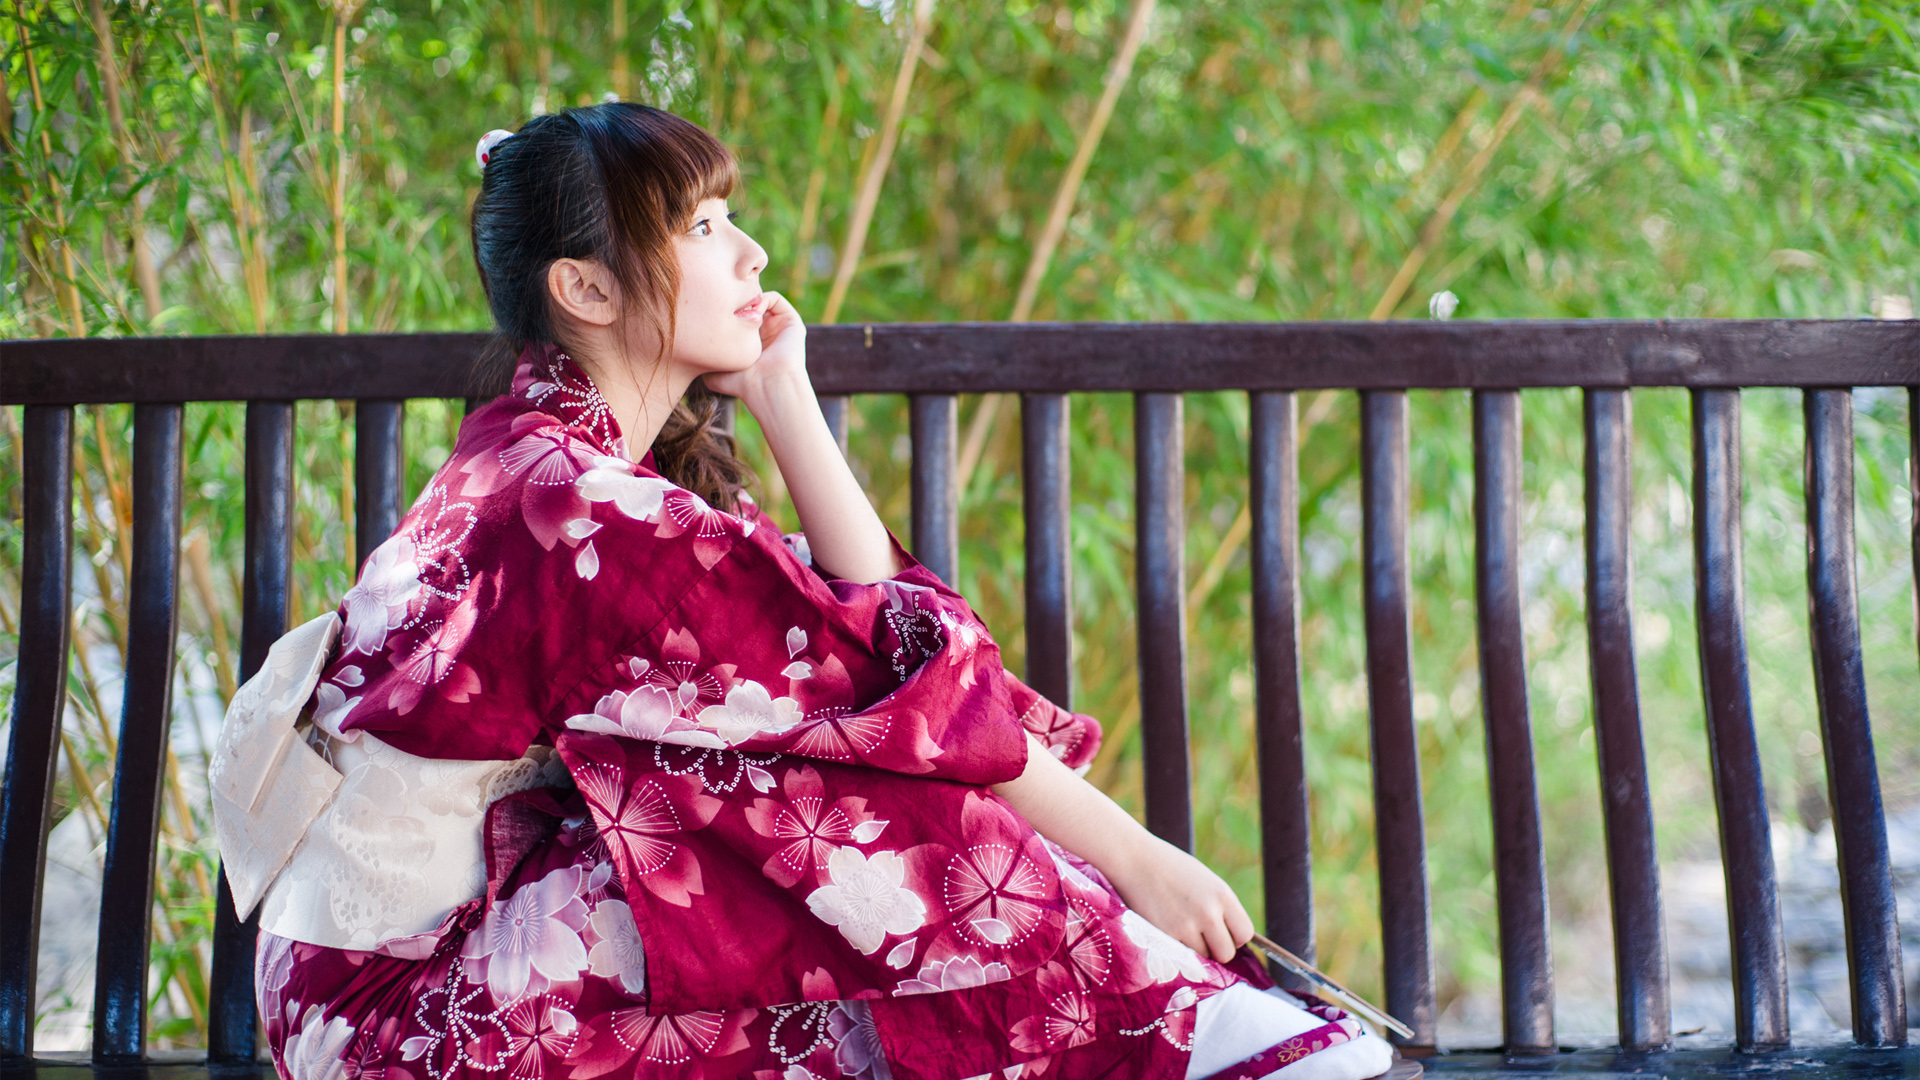 竹子 凉亭 椅子 日本和服美女壁纸